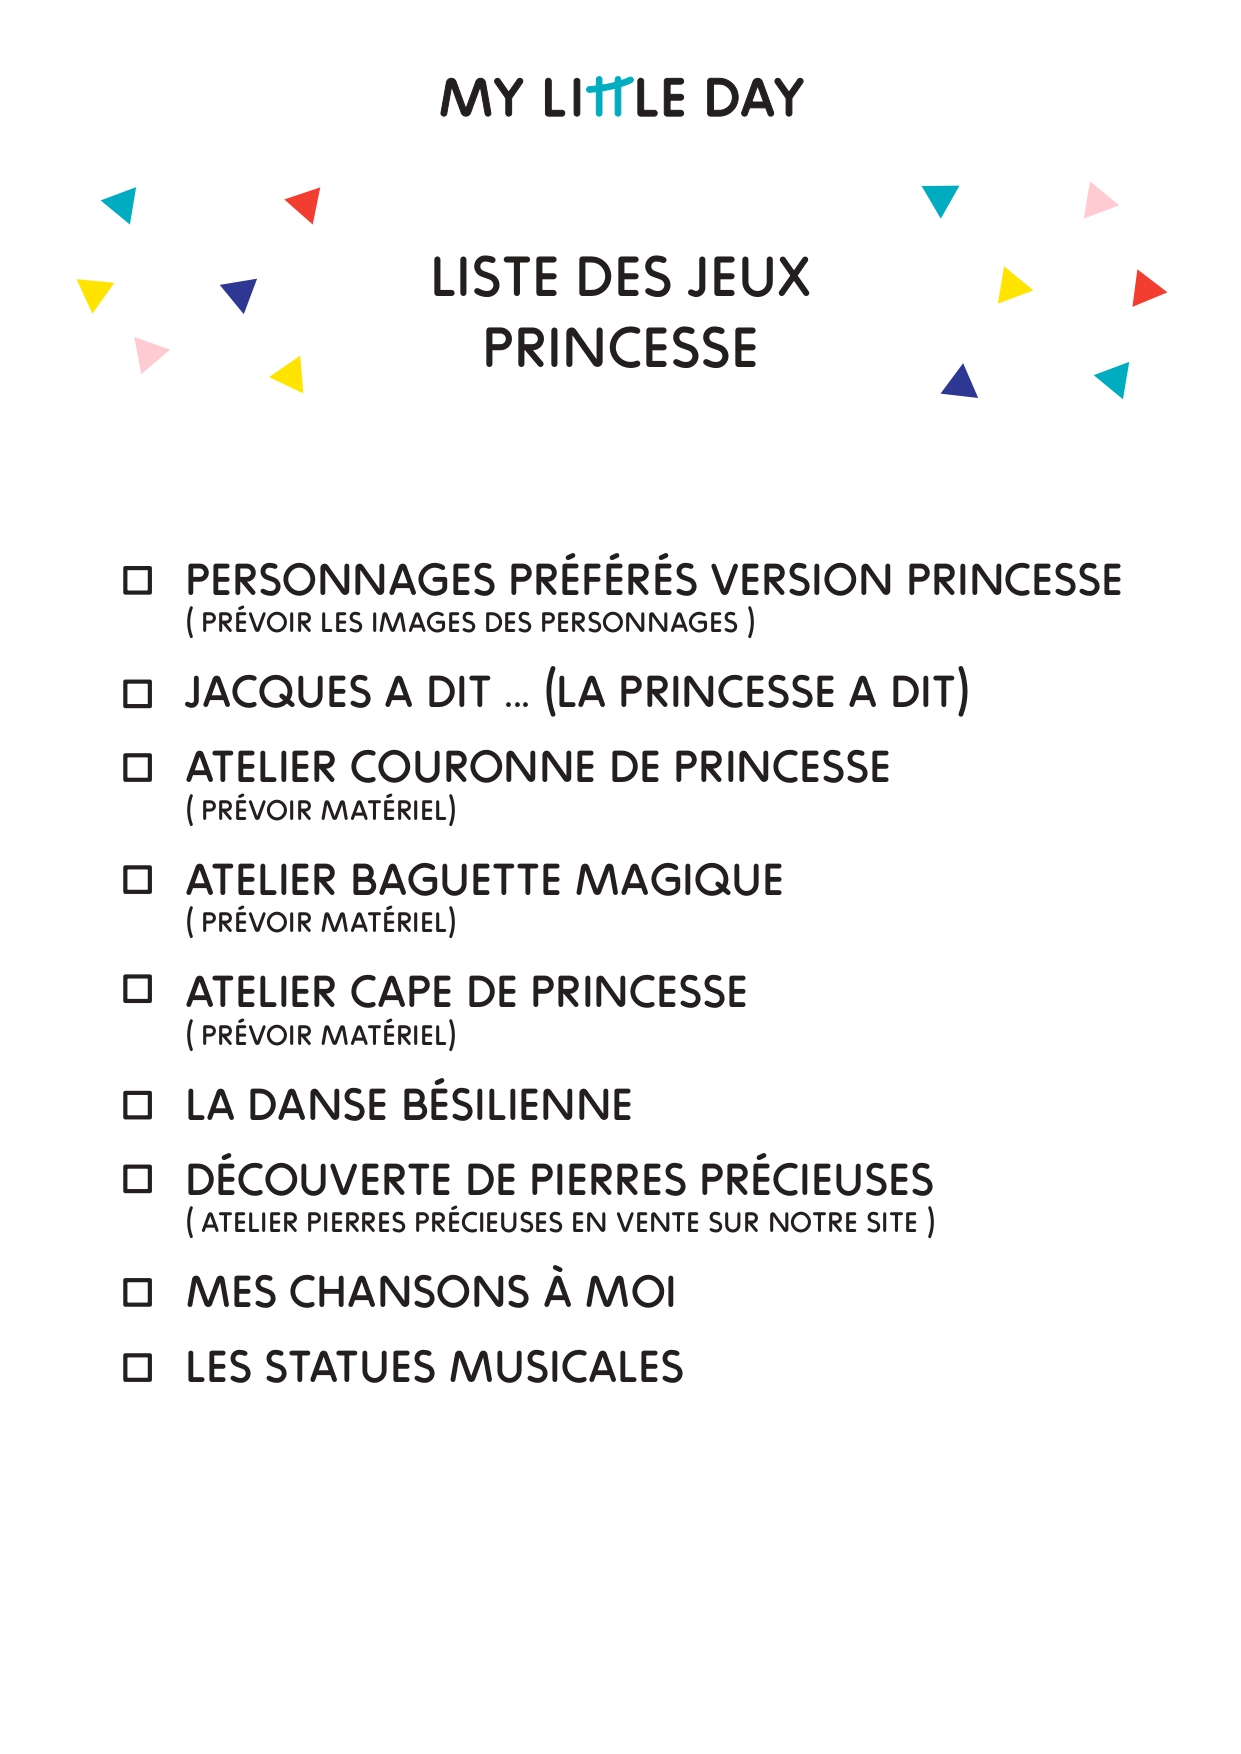 Comment organiser un anniversaire thème princesses ?